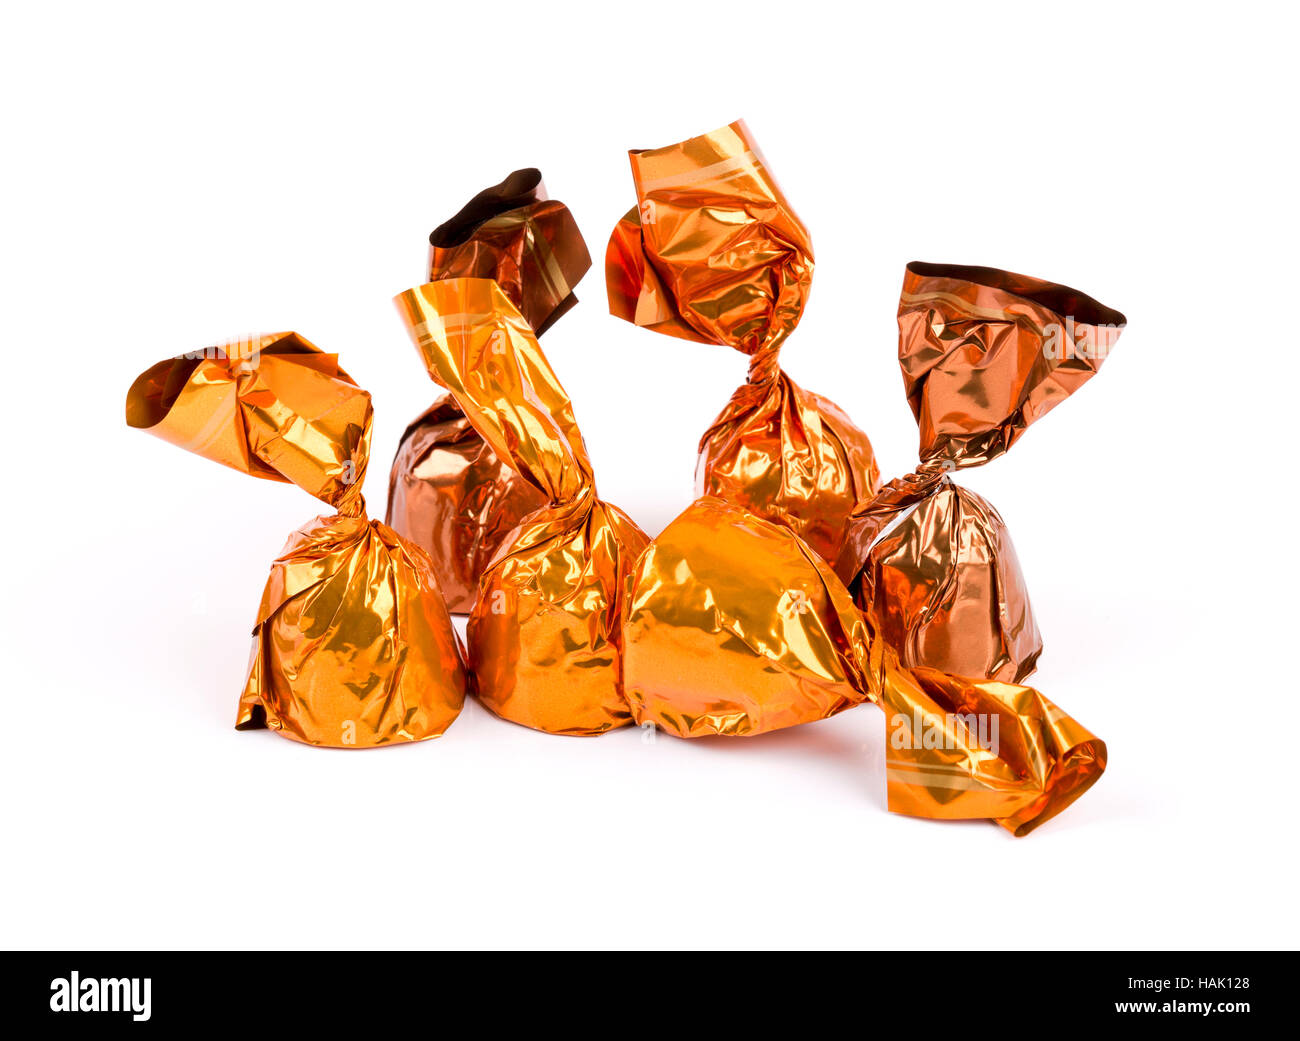 Groupe de confiserie Chocolat enveloppé dans du papier brillant isolated on white Banque D'Images